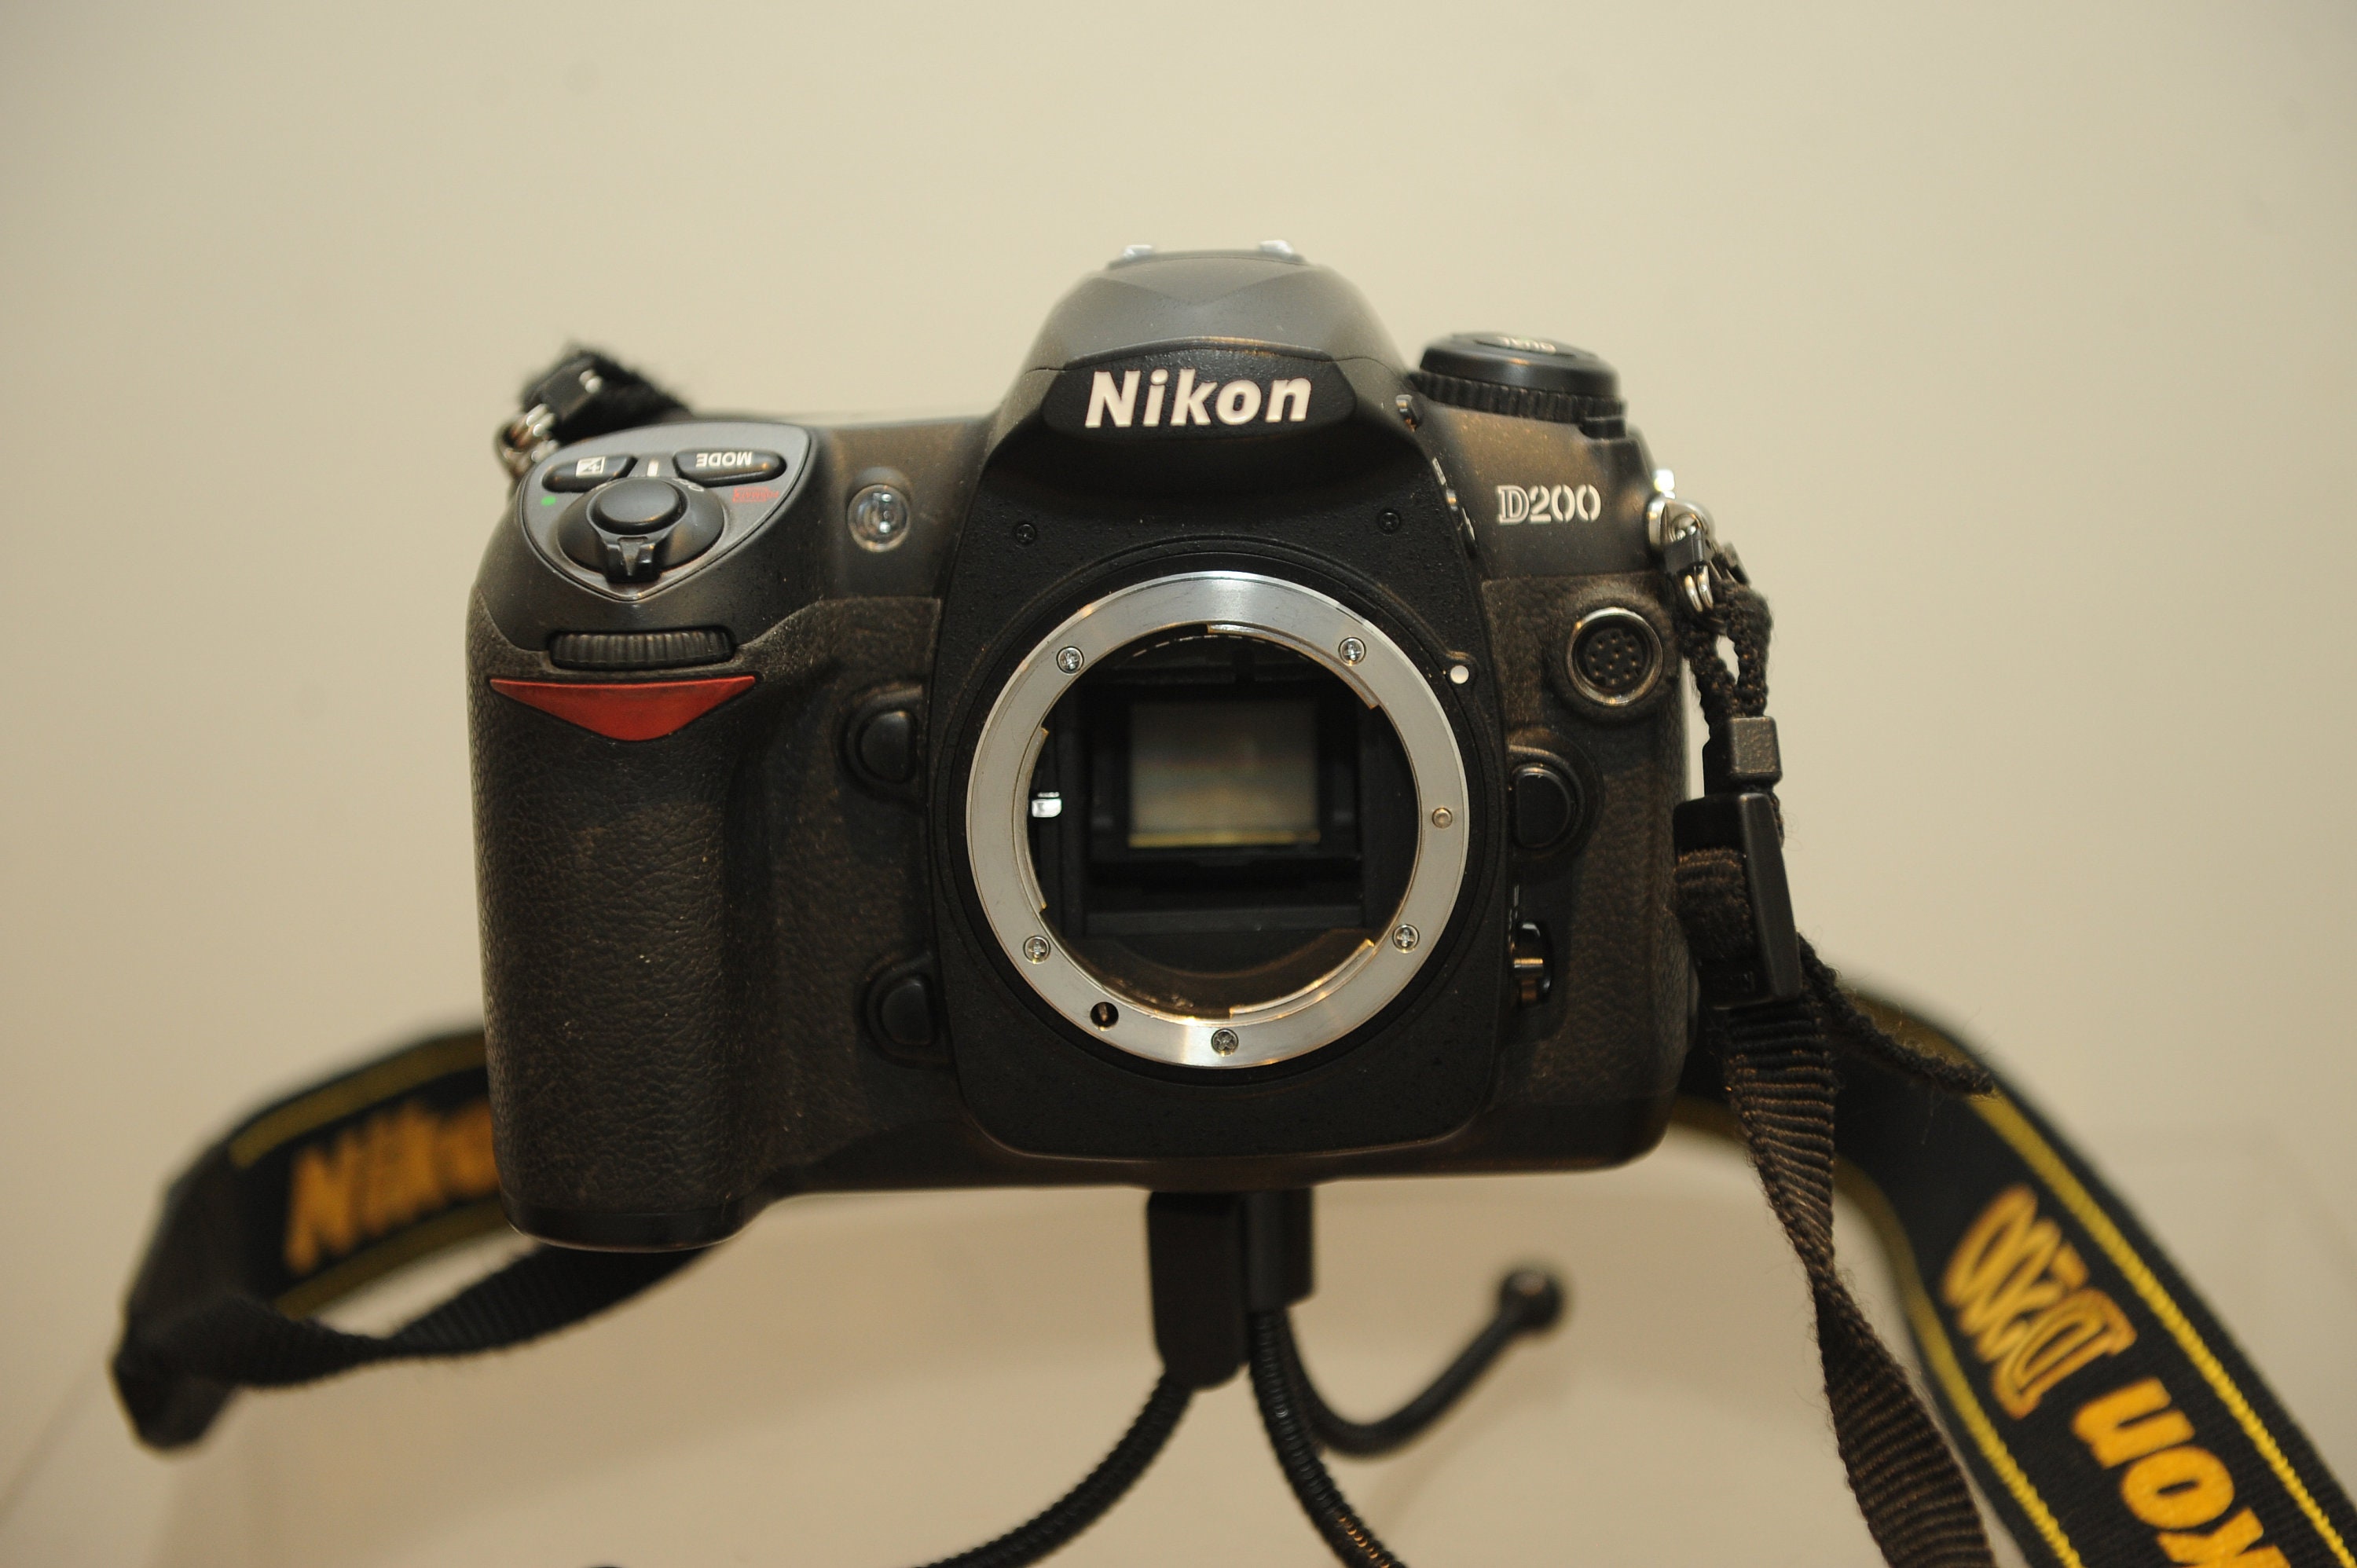 Nikon D200 Cámara digital SLR 10.2 MP (solo cuerpo)